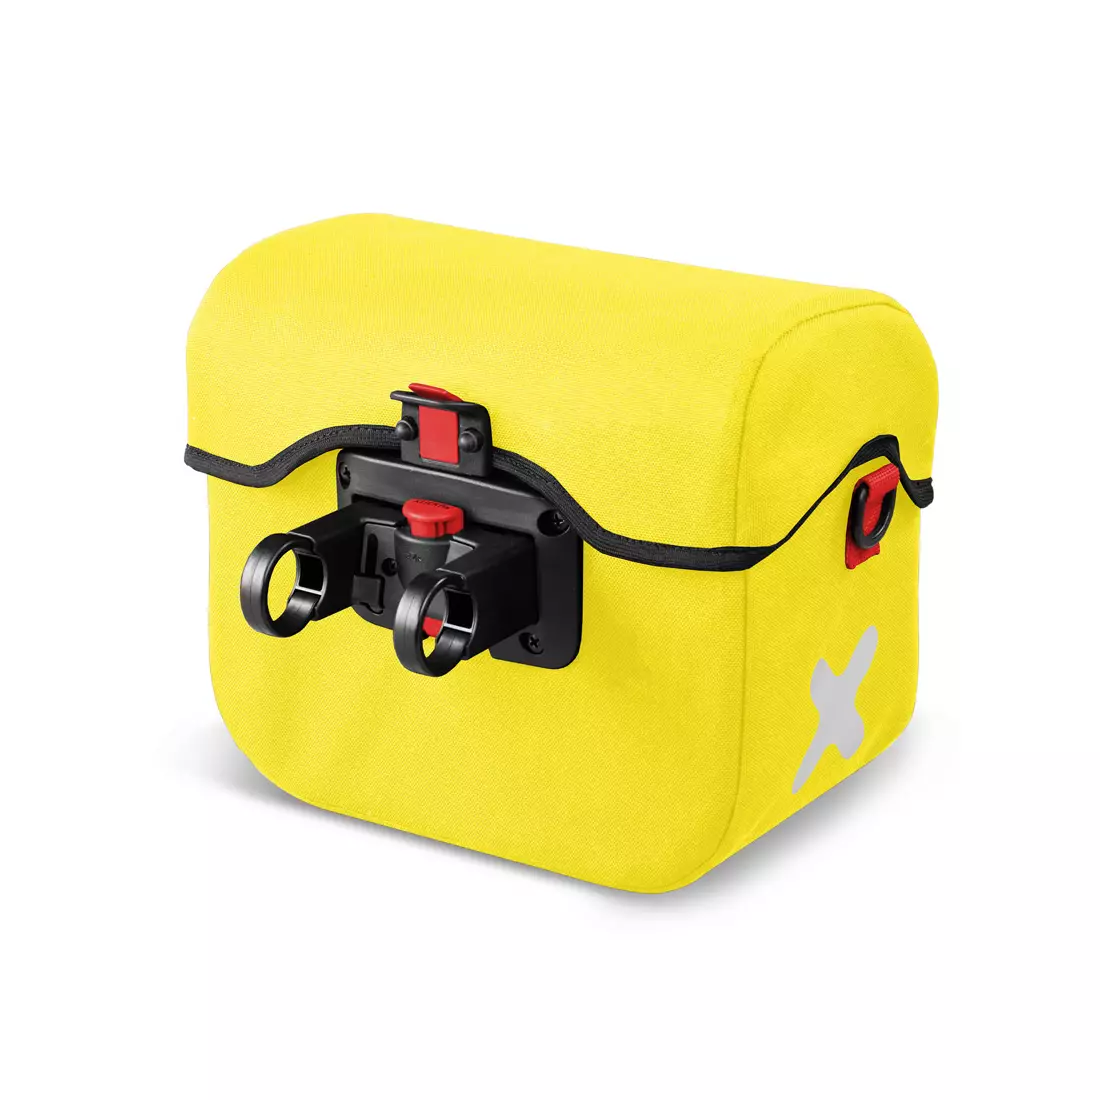 EXTRAWHEEL HANDY PREMIUM CORDURA XL taška na řídítka kola, žlutá 7,5 L